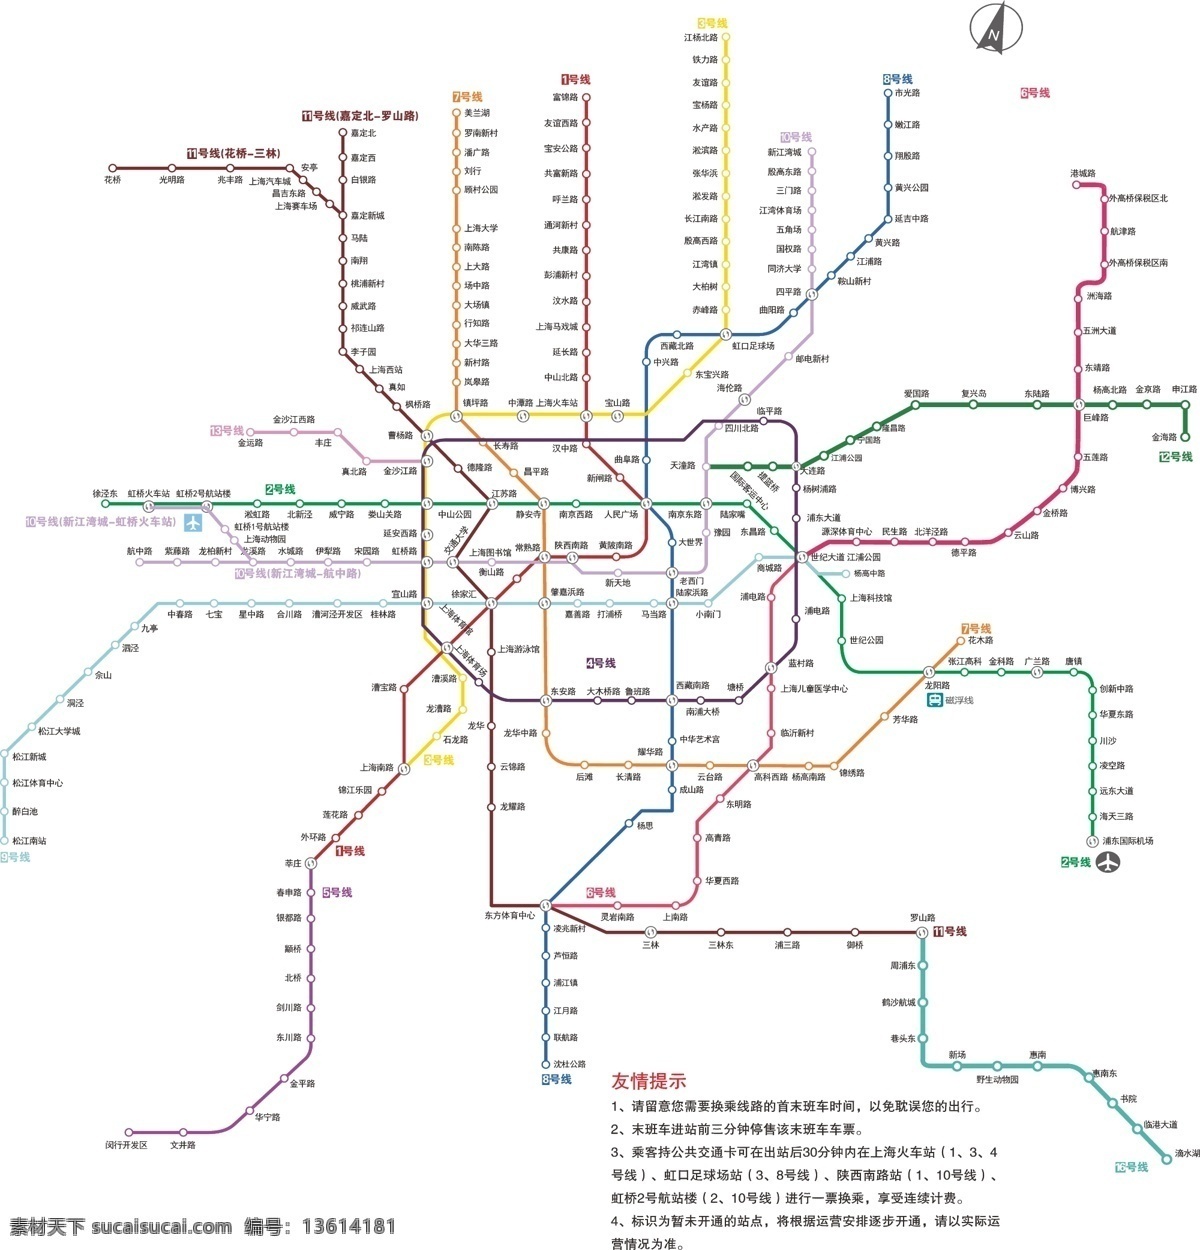 2014 上海 地铁 线路 线路图 绘制 交通 交通工具 现代科技 矢量 矢量素材 其他矢量